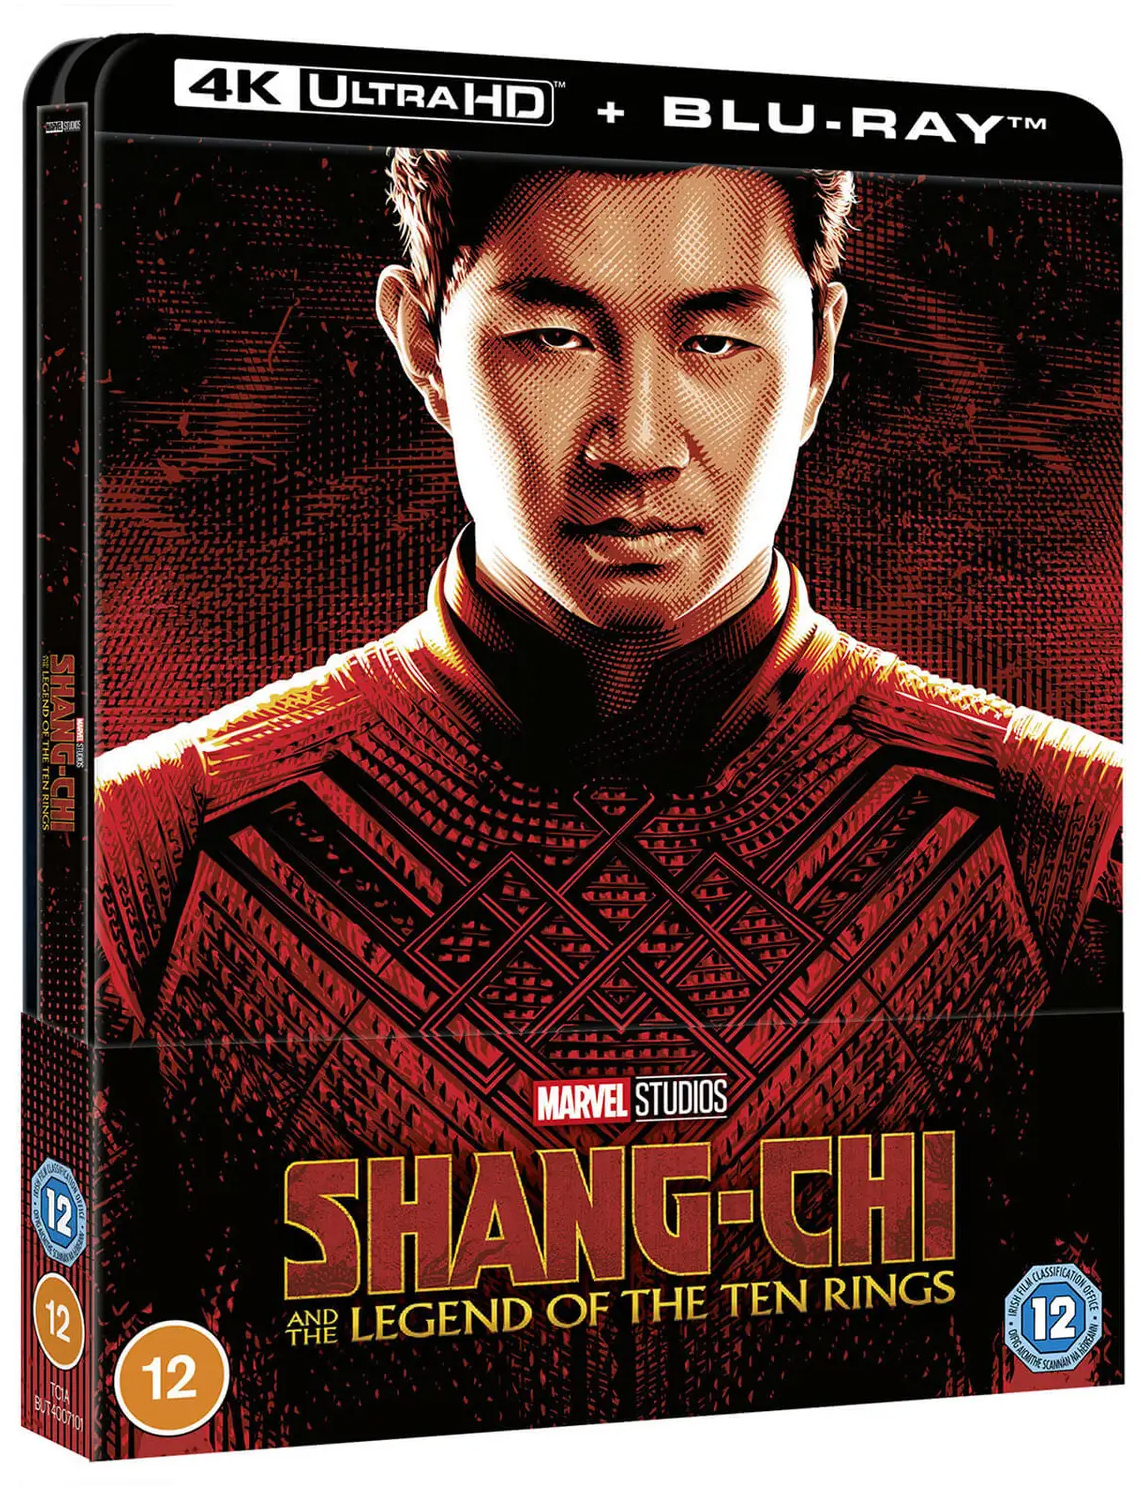 シャン・チー/テン・リングスの伝説 Shang-Chi and the Legend<br>of the Ten Rings steelbook 4K UHD zavvi スチールブック